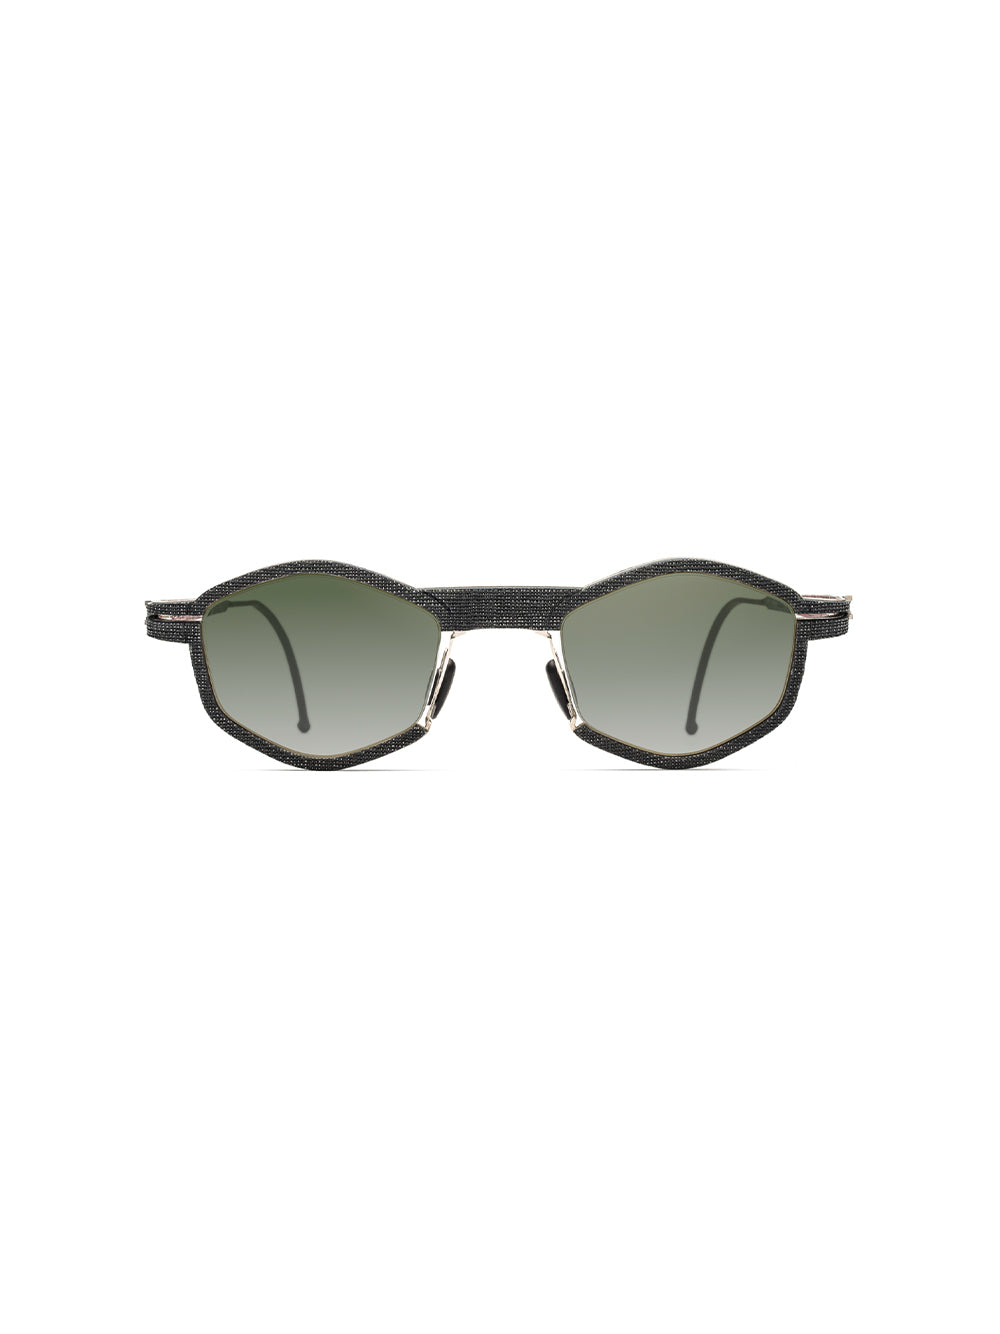 IL02 Sunglasses